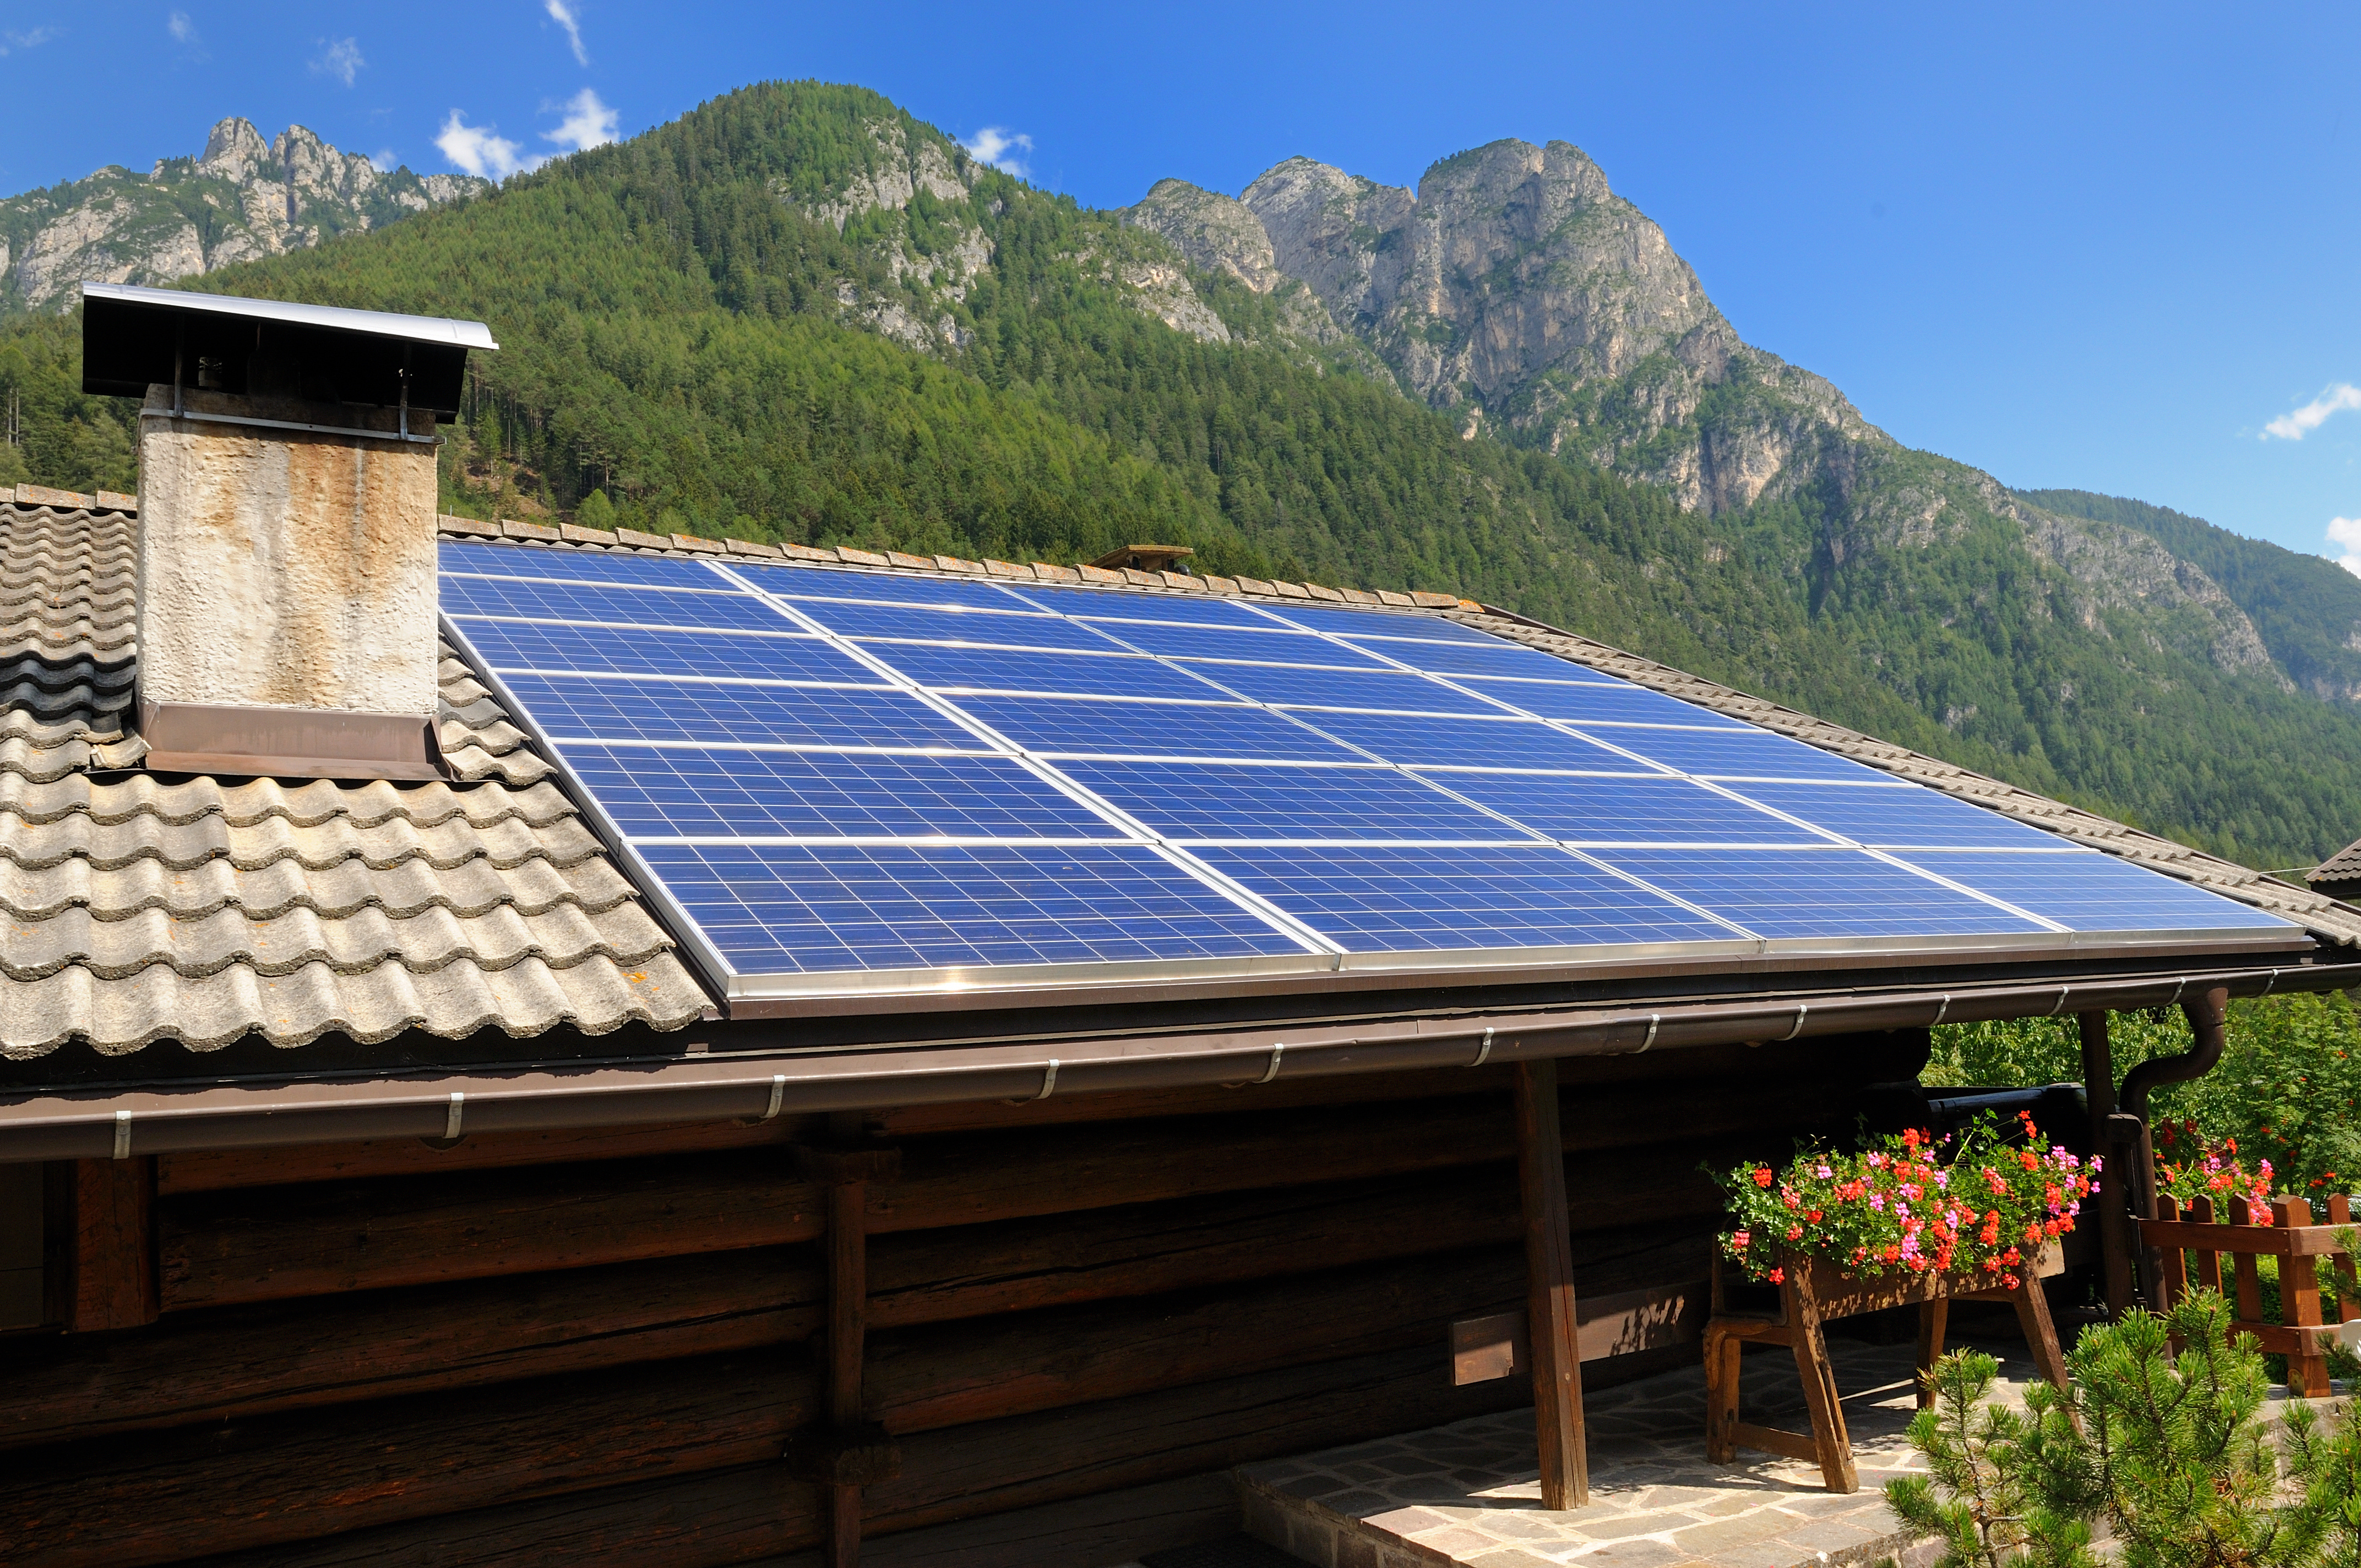 solar-home-mountain-cabin-adobestock-34935812.jpeg